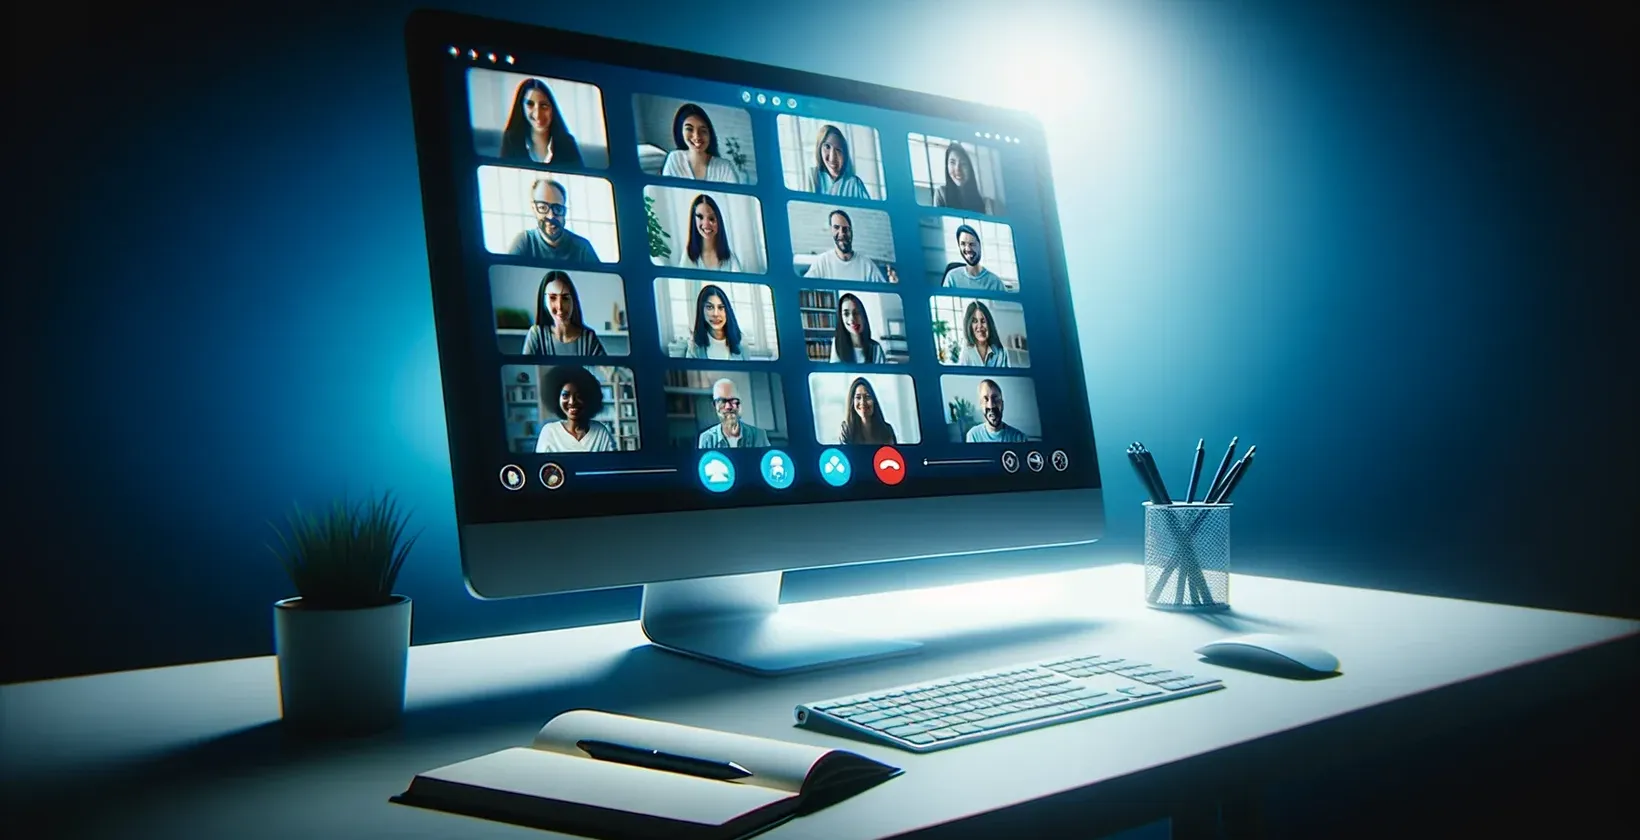 Зображення екрану комп'ютера з сесією GoToMeeting, на якому видно групу людей і транскрипцію в прямому ефірі.